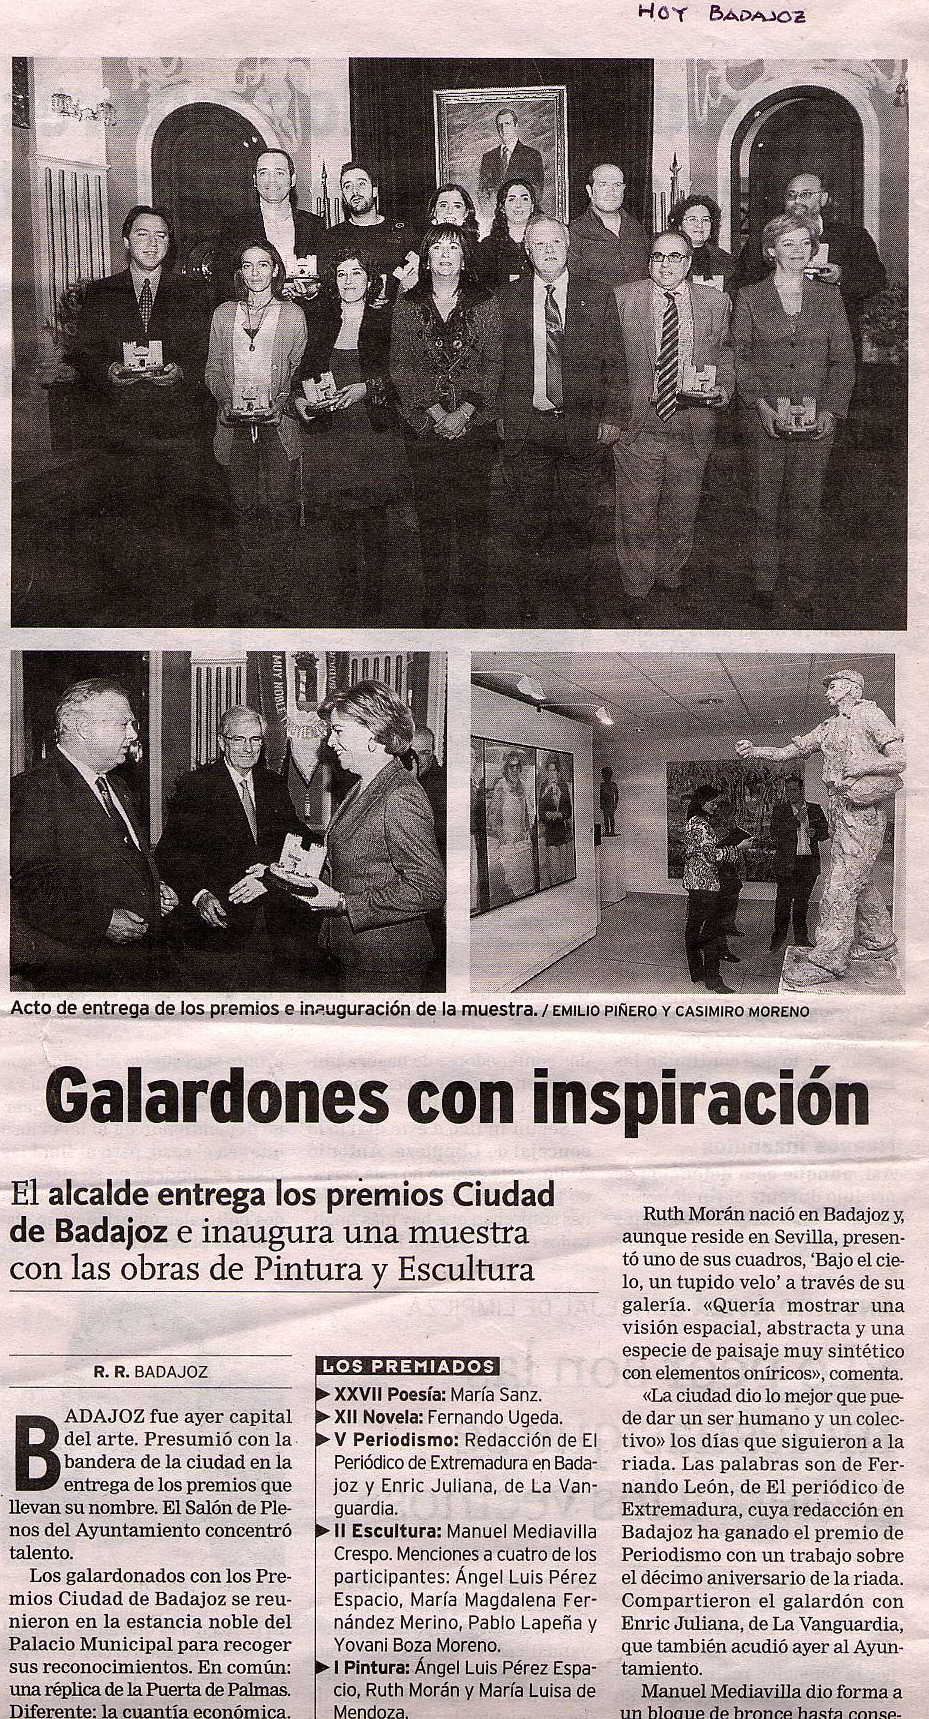 Hoy, Badajoz: Badajoz Painting Competition awards